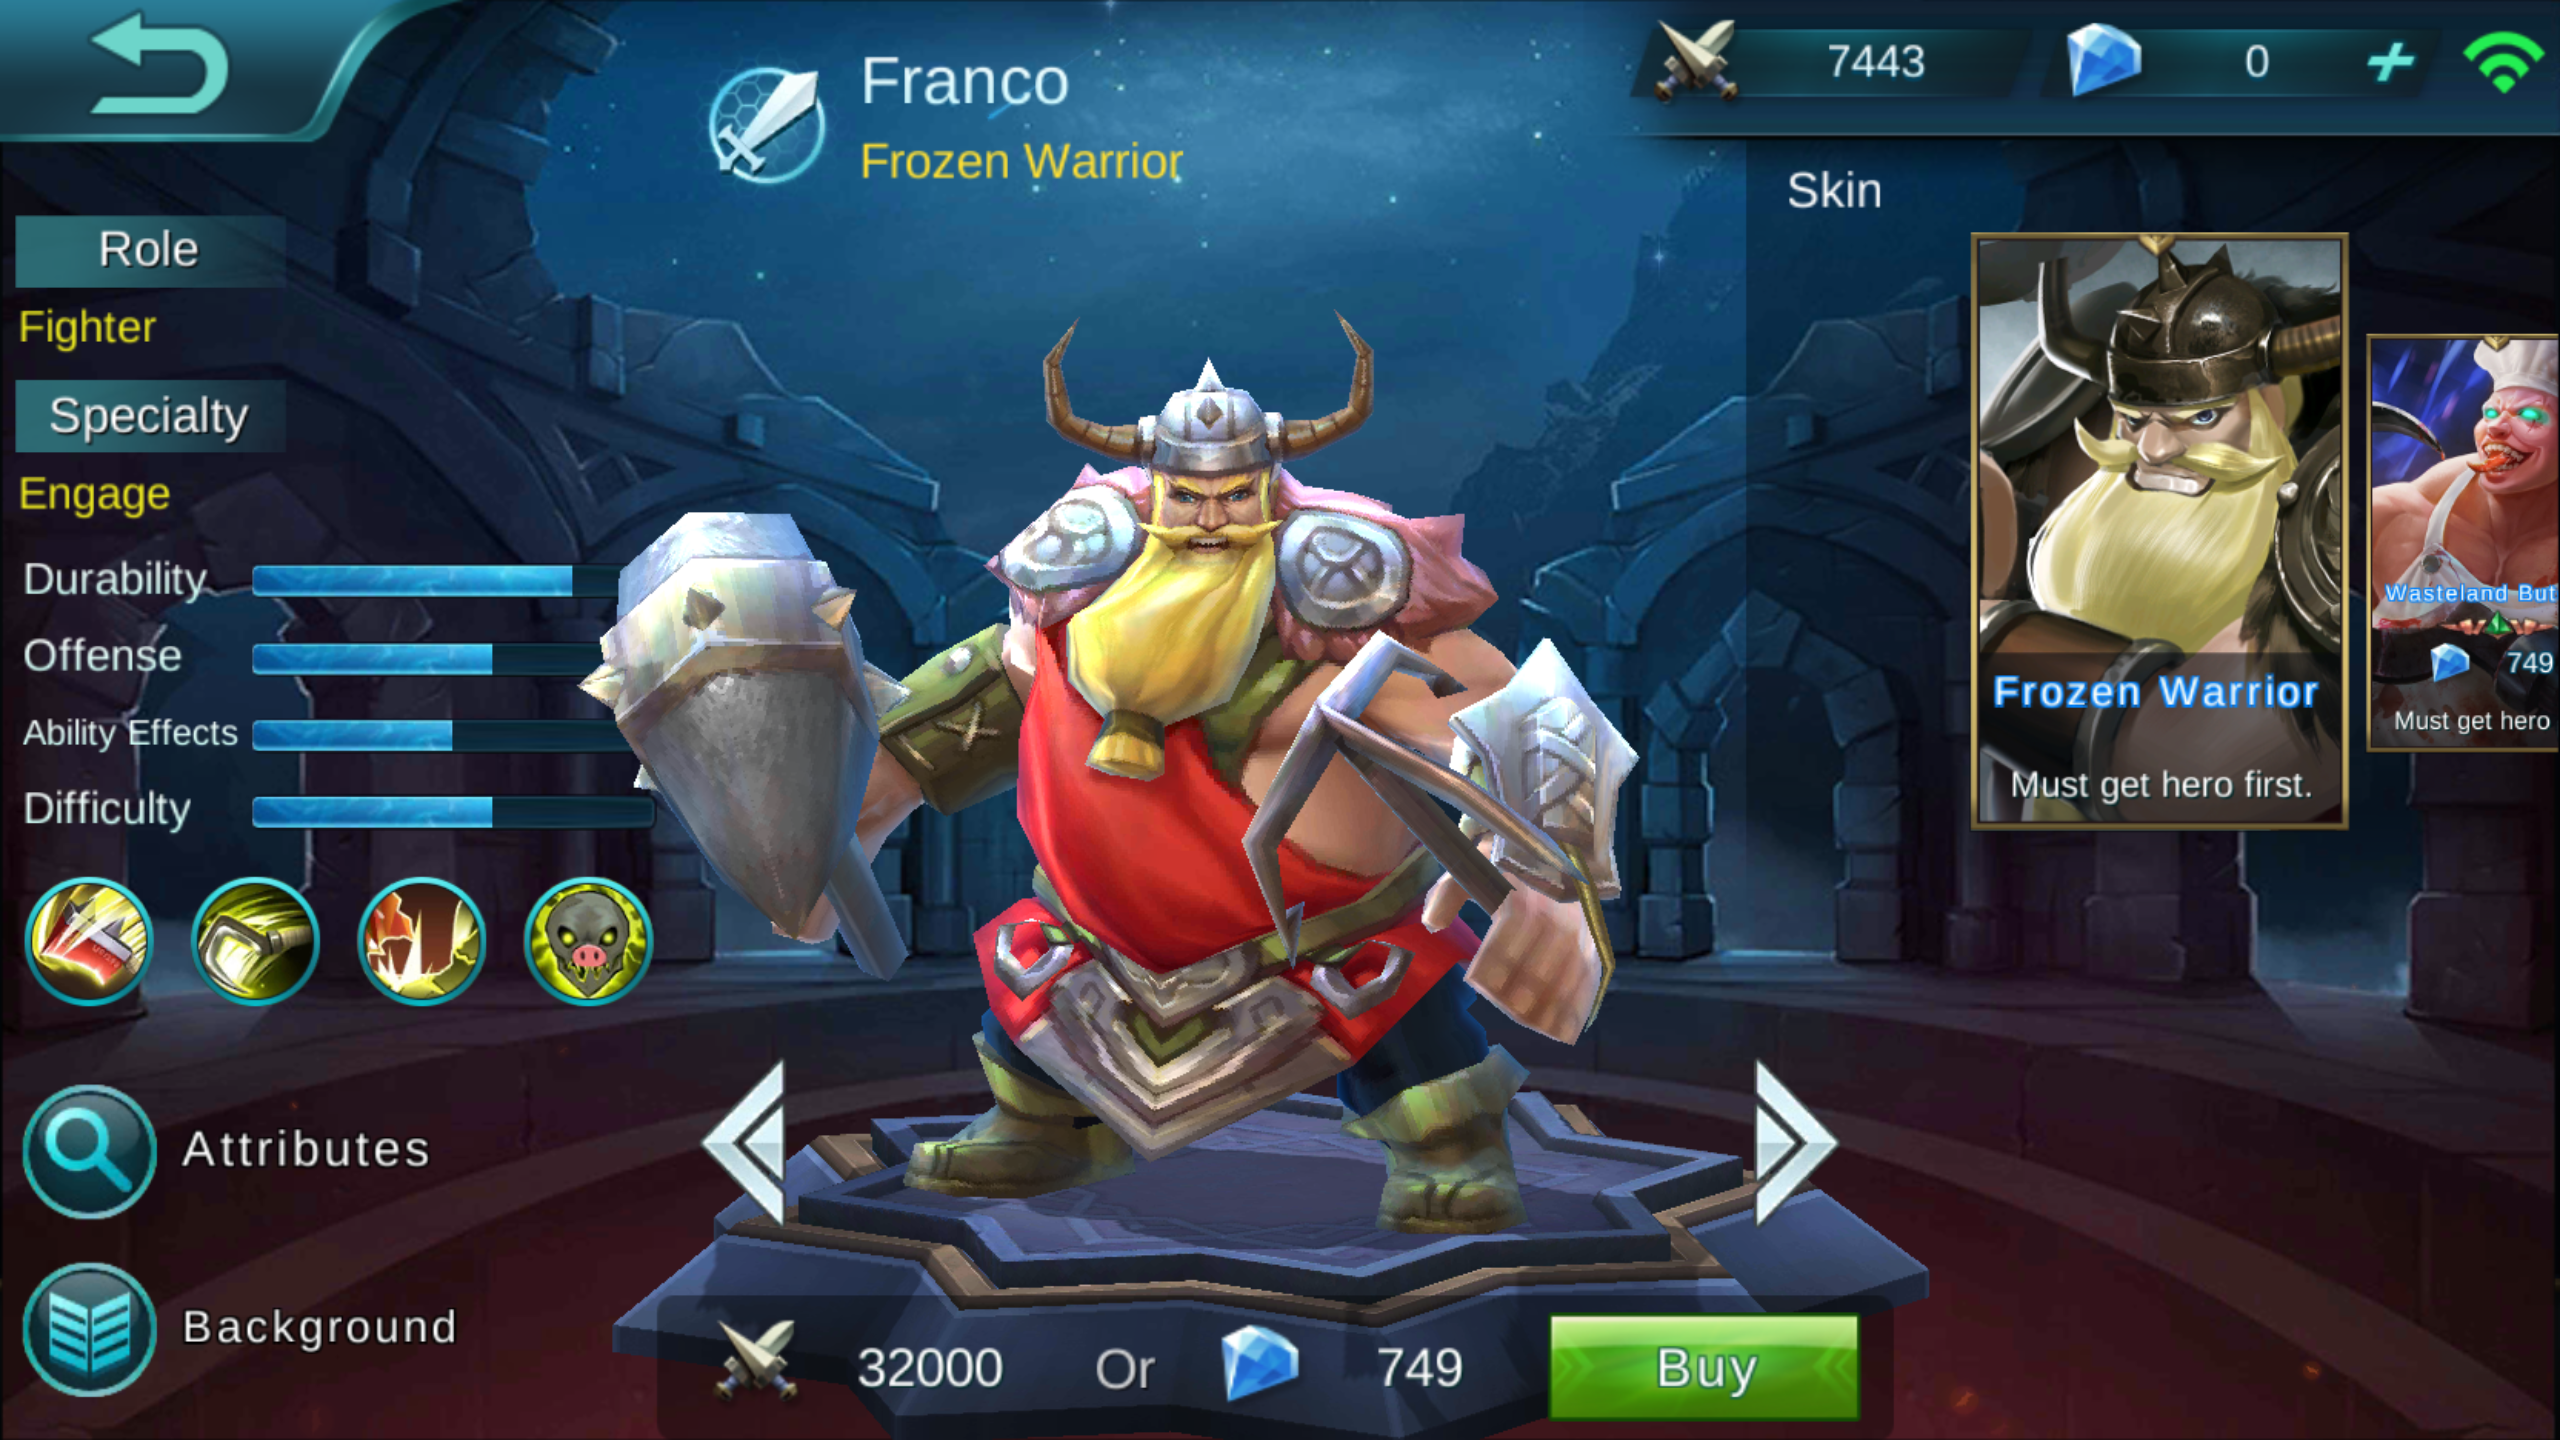 Franco Frozen Warrior Review Mobile Legends Bang Bang Online